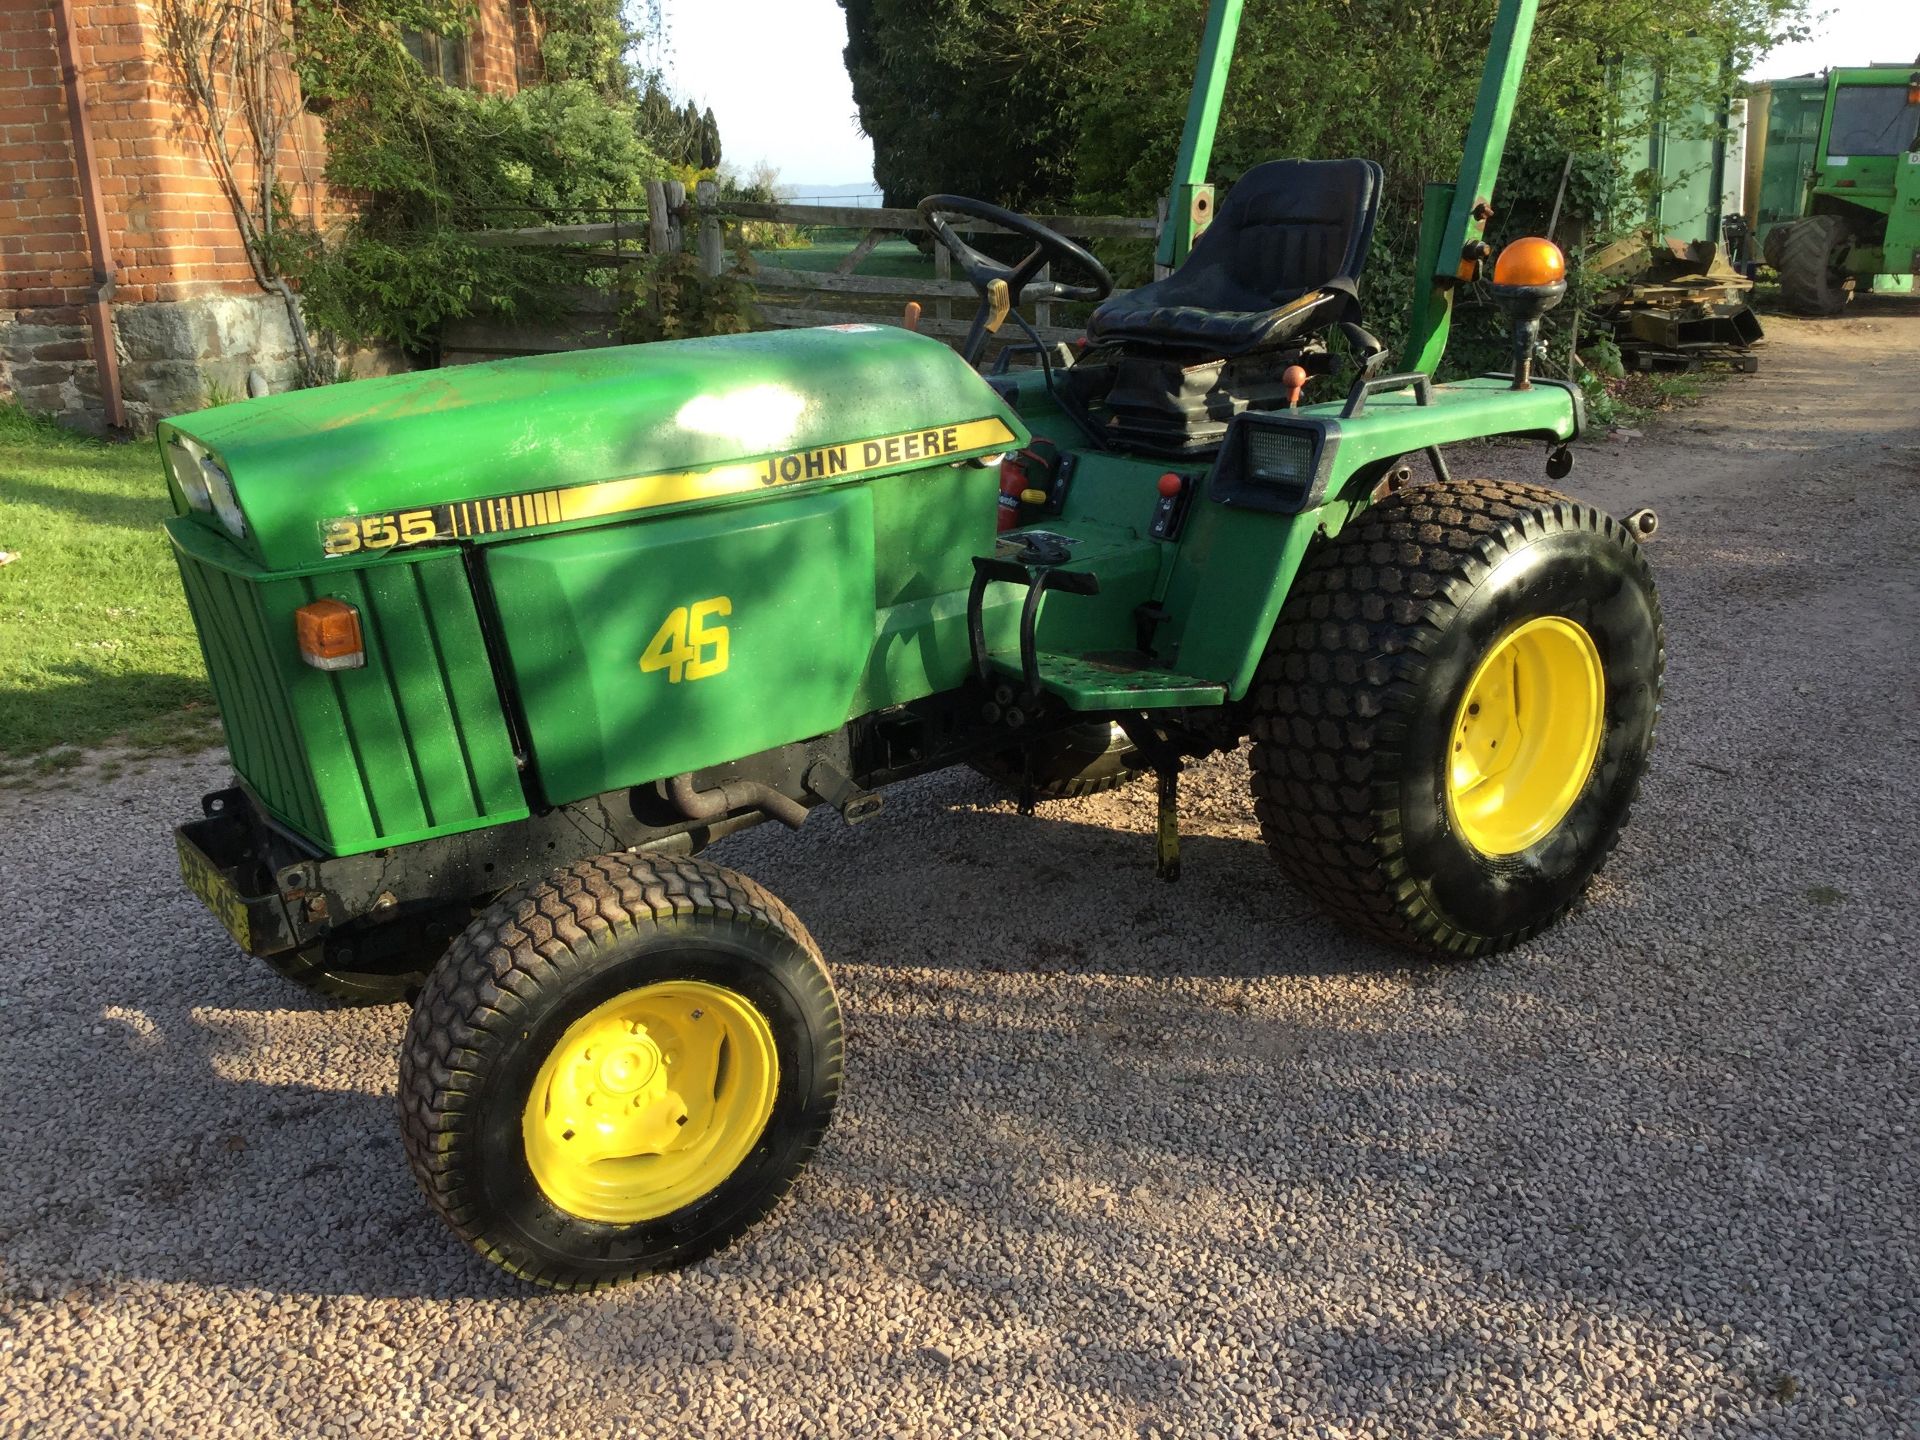 855 John Deere compact tractor